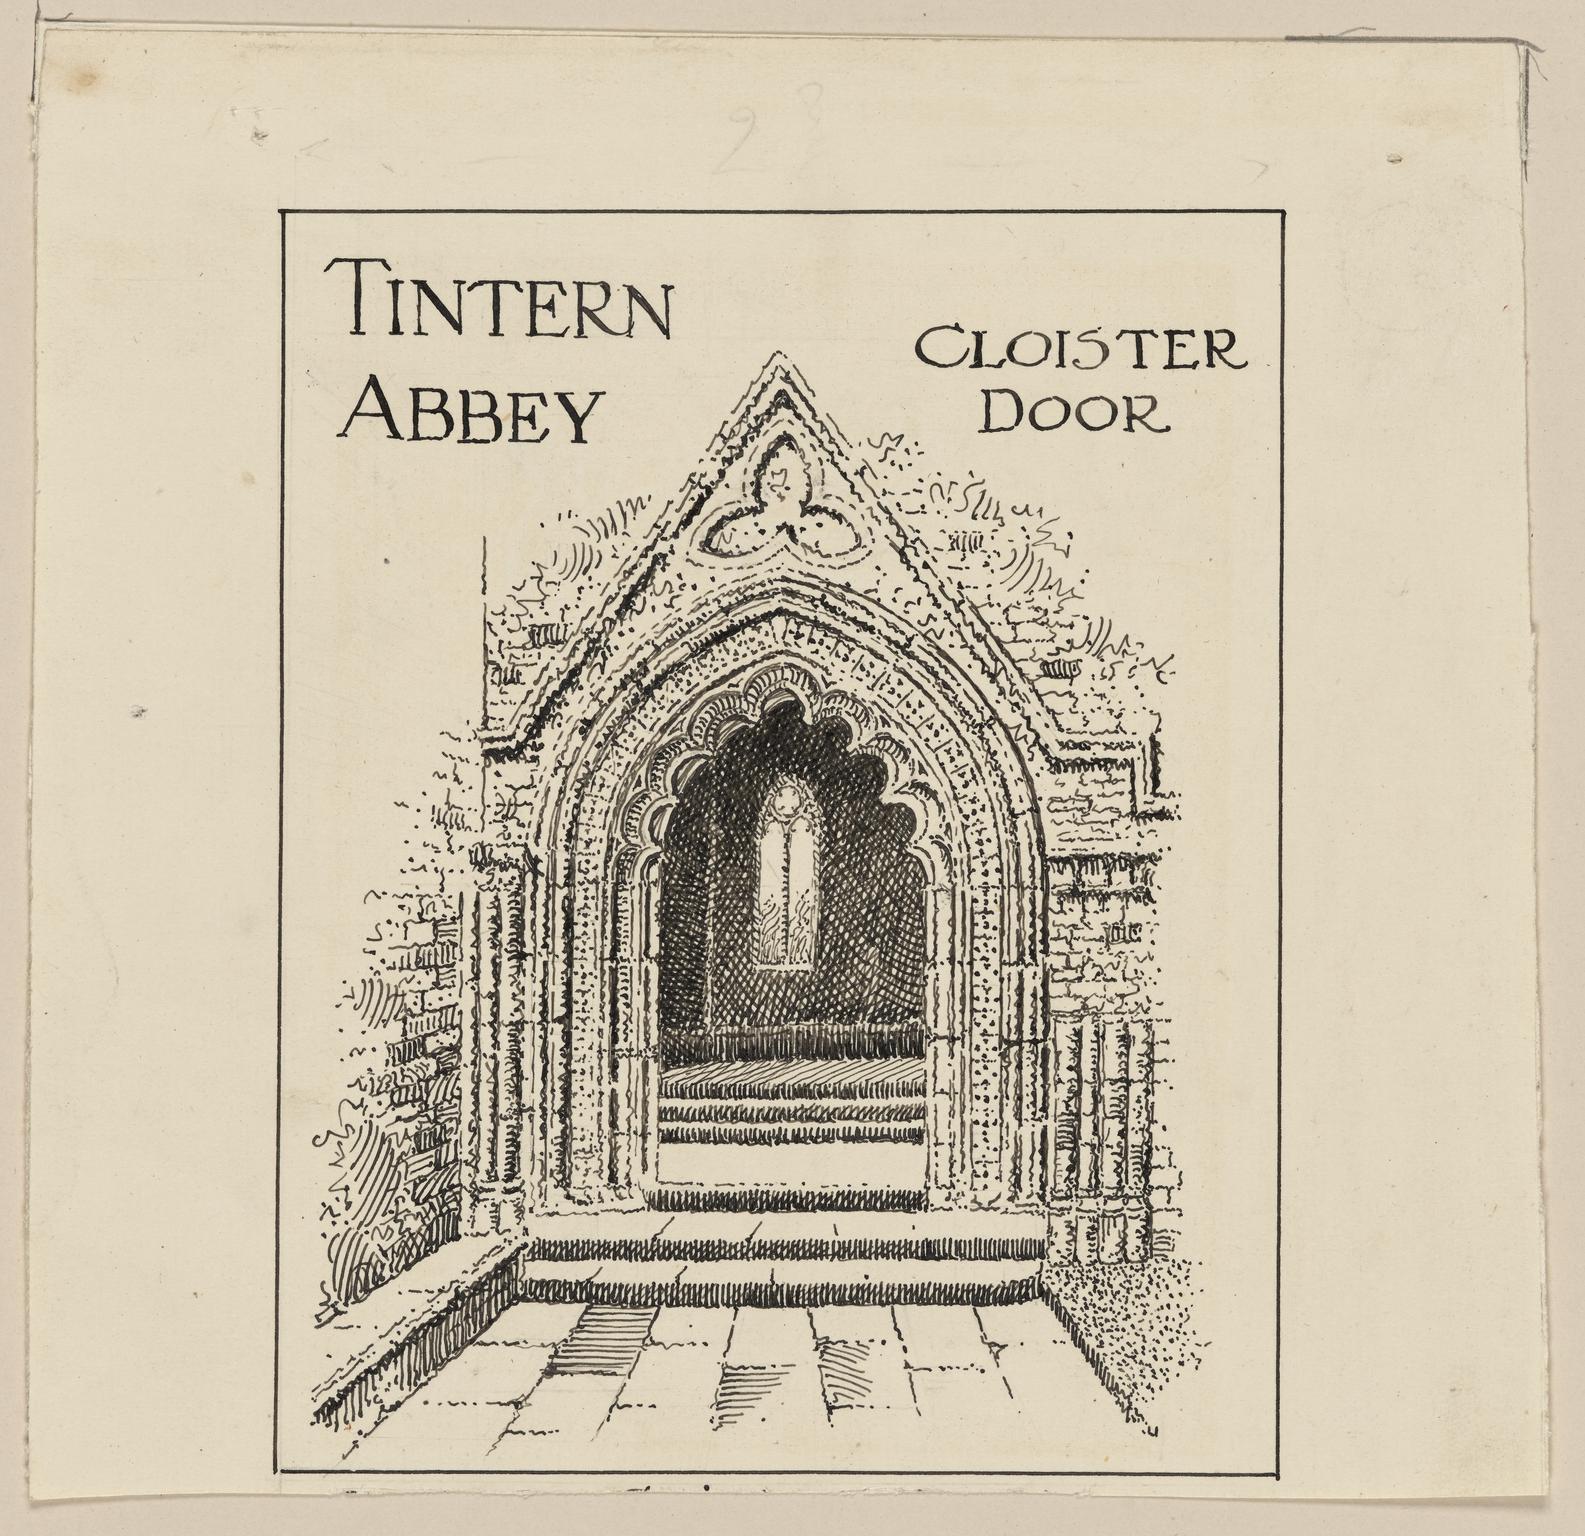 Tintern Abbey, Cloister Door